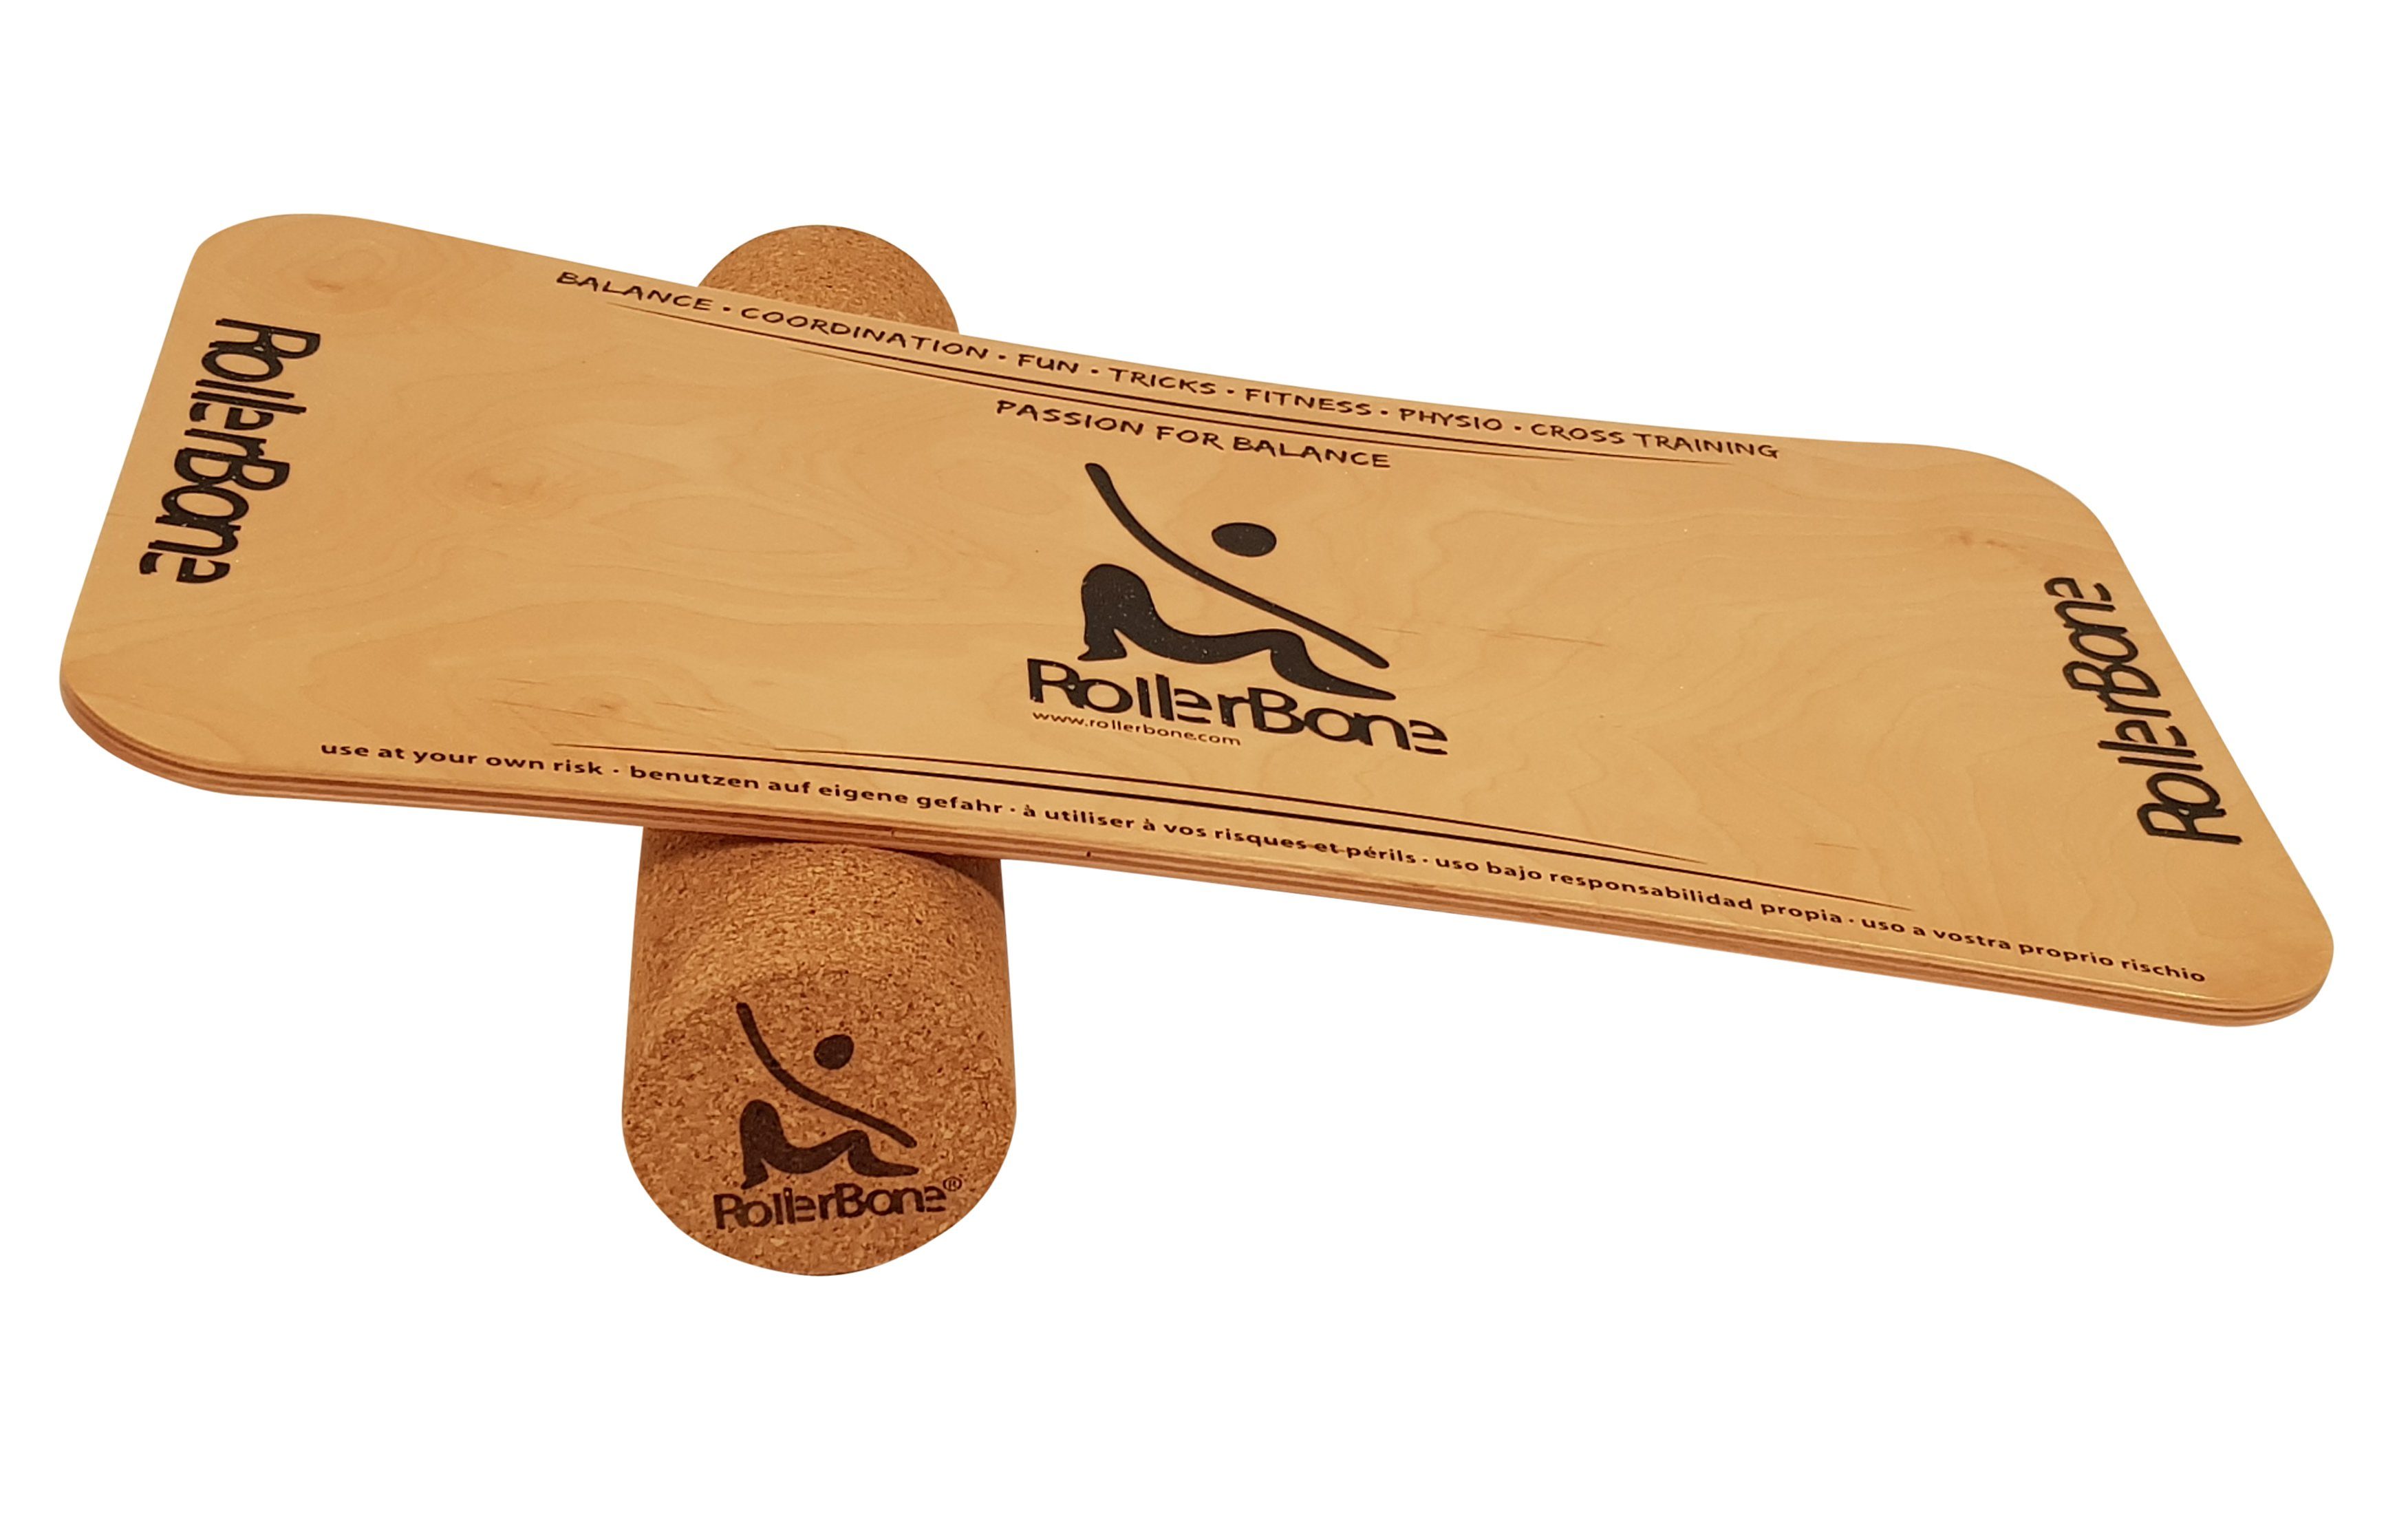 RollerBone Balanceboard RollerBone Balance-Board Holz & Ahorn Holz nachhaltiges & Set Kork natürliches Material Kork, aus Ahorn Material